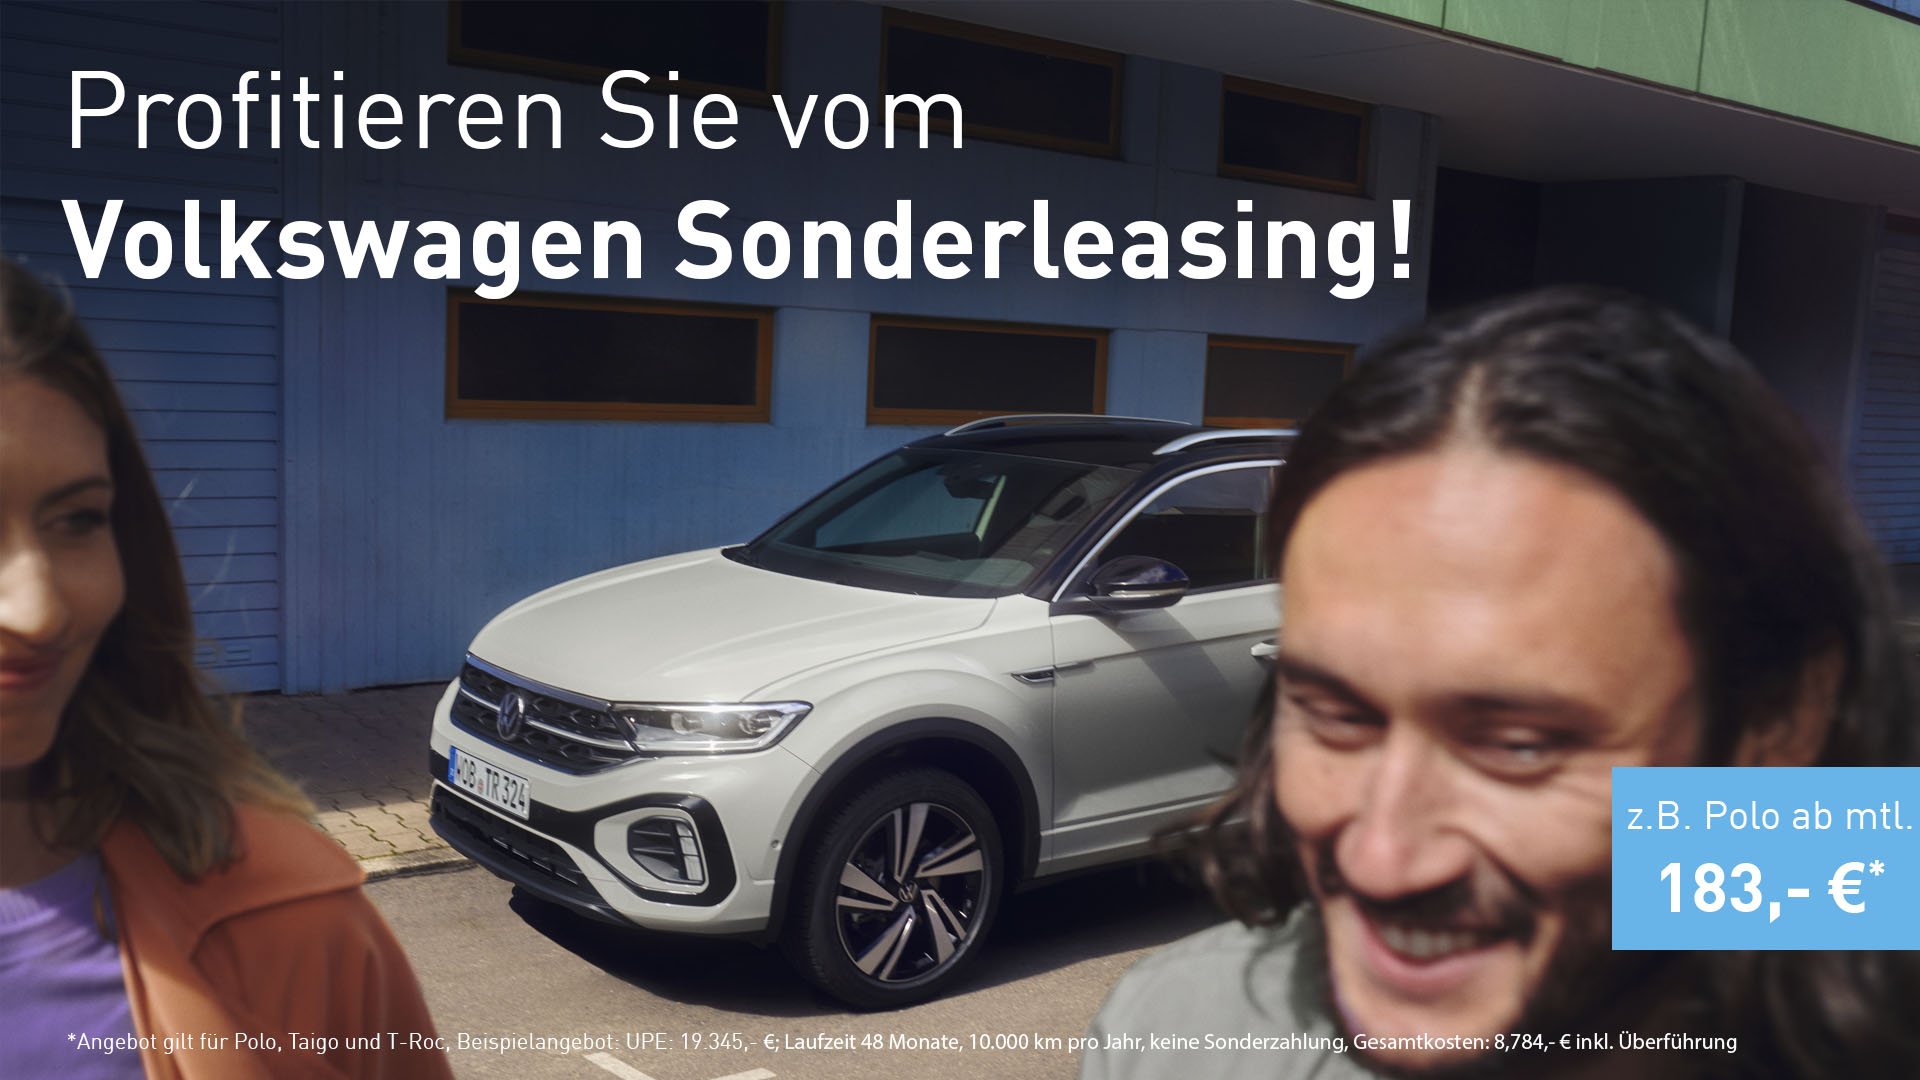 Profitieren Sie vom Volkswagen Sonderleasing!